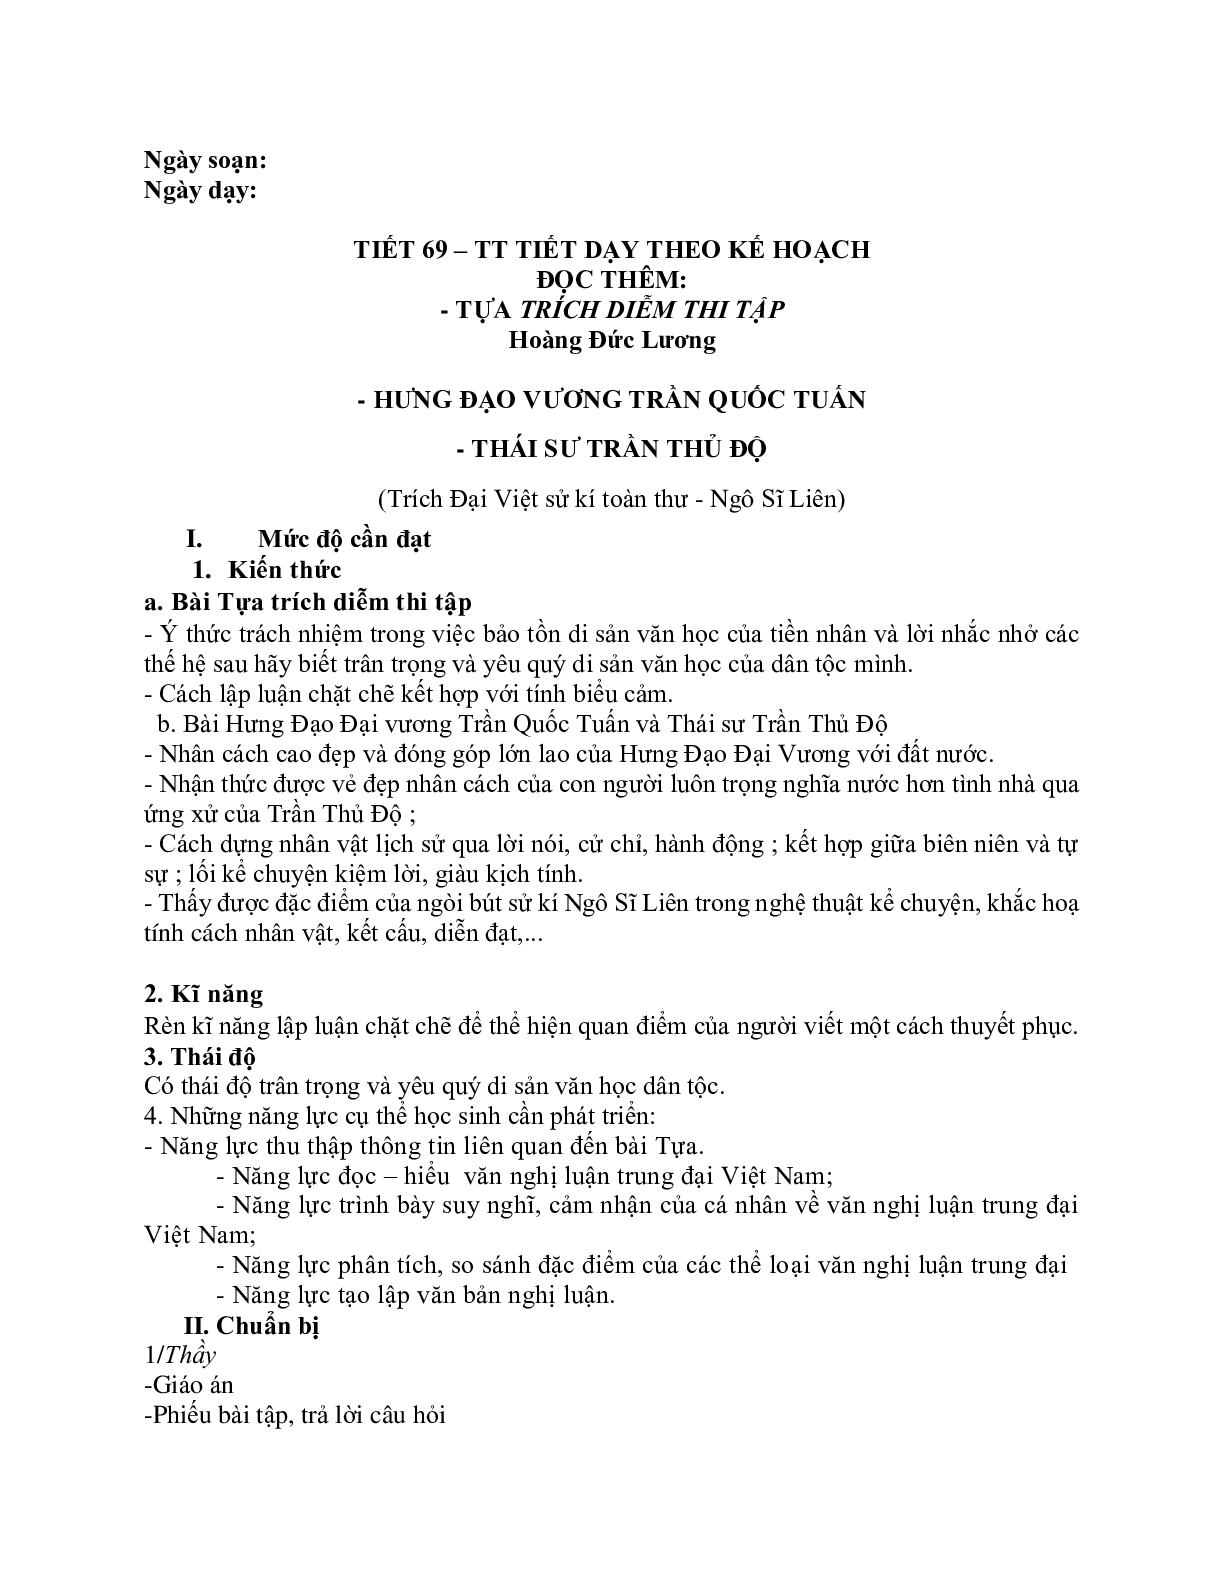 Giáo án ngữ văn lớp 10 Tiết 68, 69: Tựa trích diễm thi tập (trang 1)